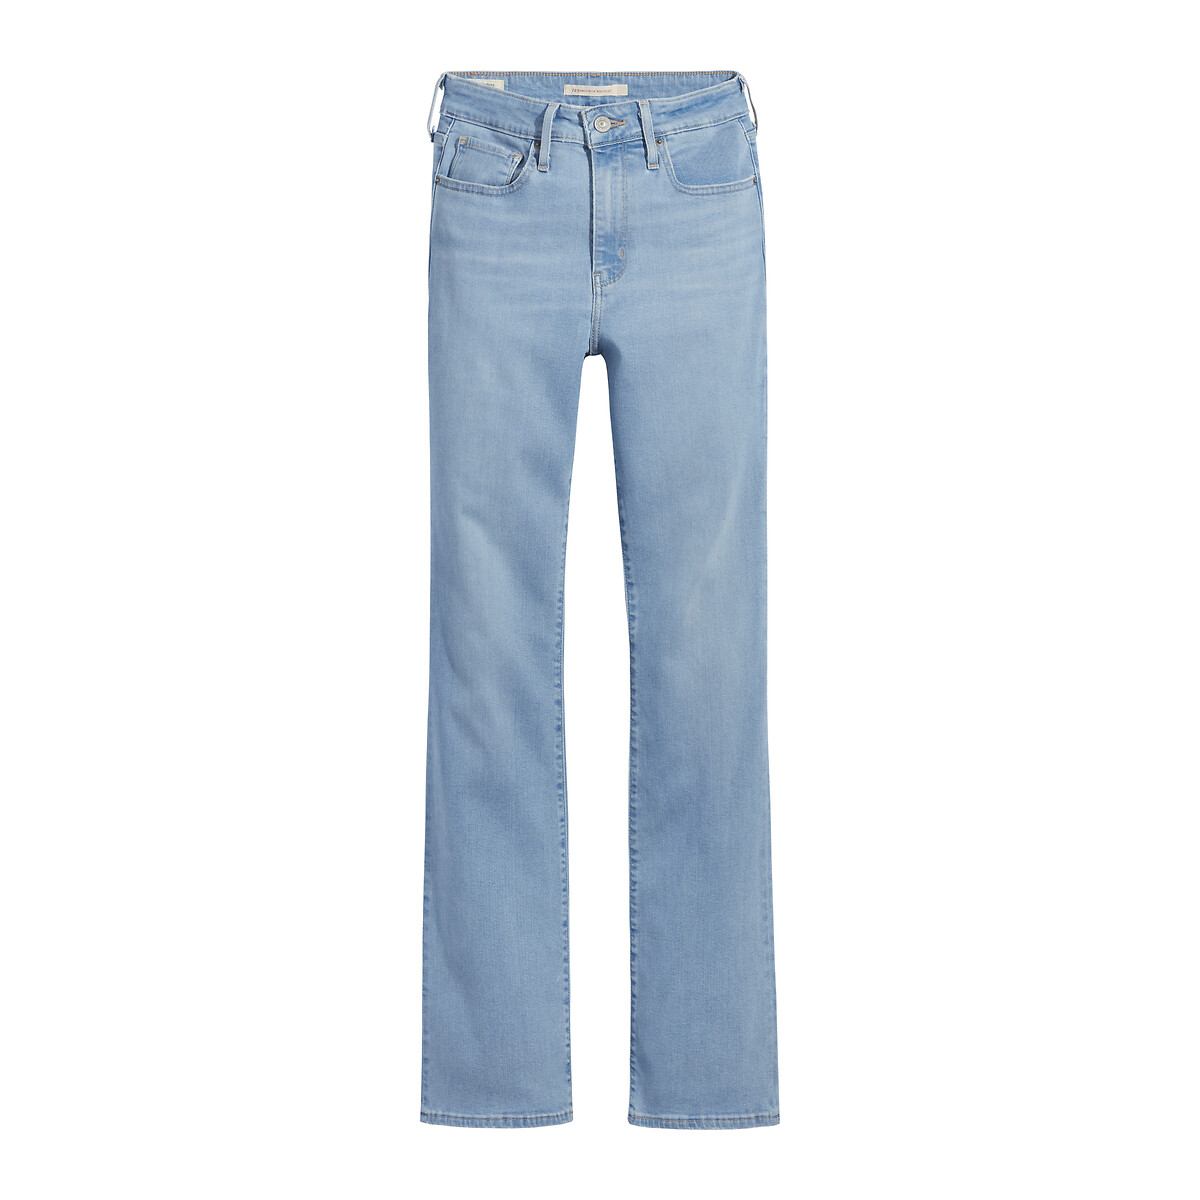 725 Jean coupe bootcut taille haute en lyocell mélangé De Bijenkorf Femme Vêtements Pantalons & Jeans Jeans Bootcut jeans 